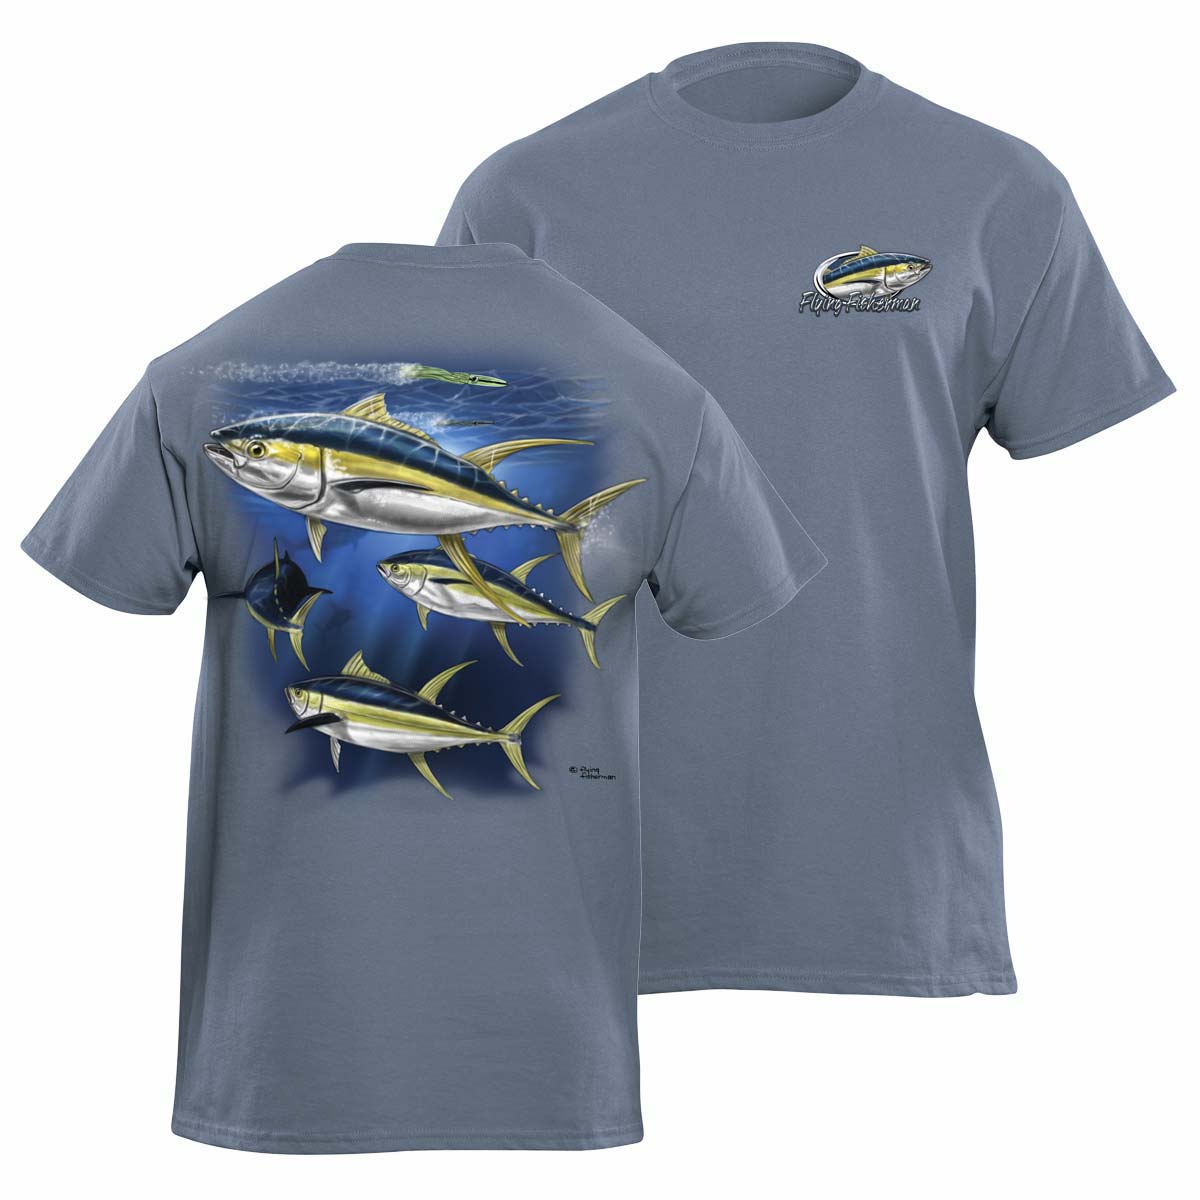 Flying Fisherman T1632Xl Yellowfin Tuna T-Shirt, Indigo Xlarge